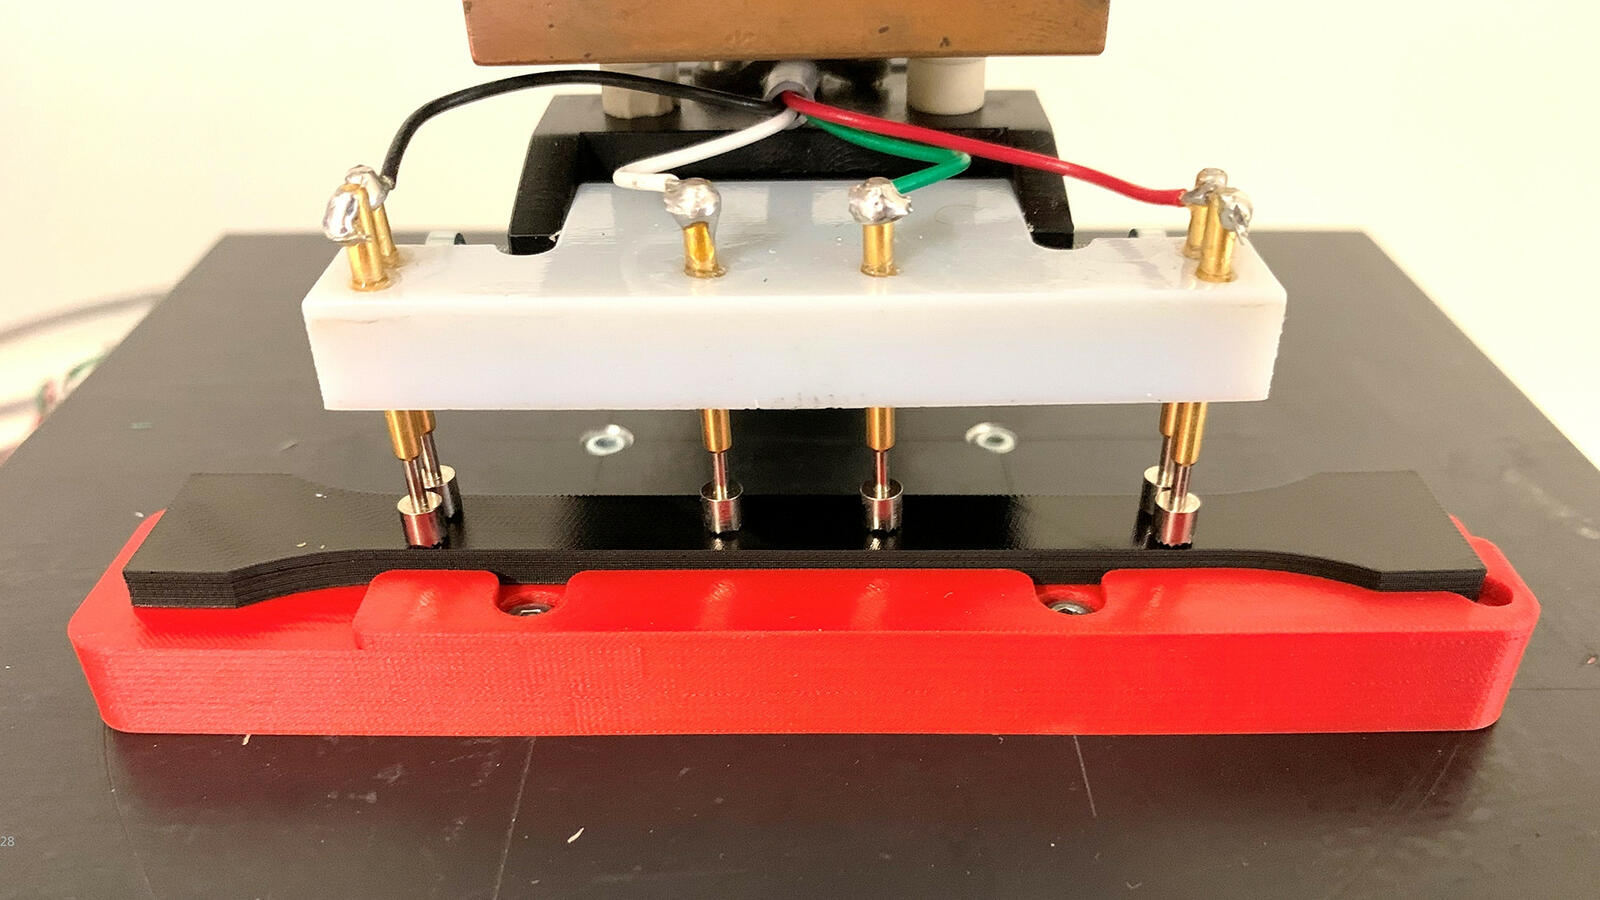 Widerstandsmessung an einem thermoplastischen Elastomer mit Rußpartikeln: Je kleiner der Widerstand, desto mehr Anwendungsmöglichkeiten gibt es.